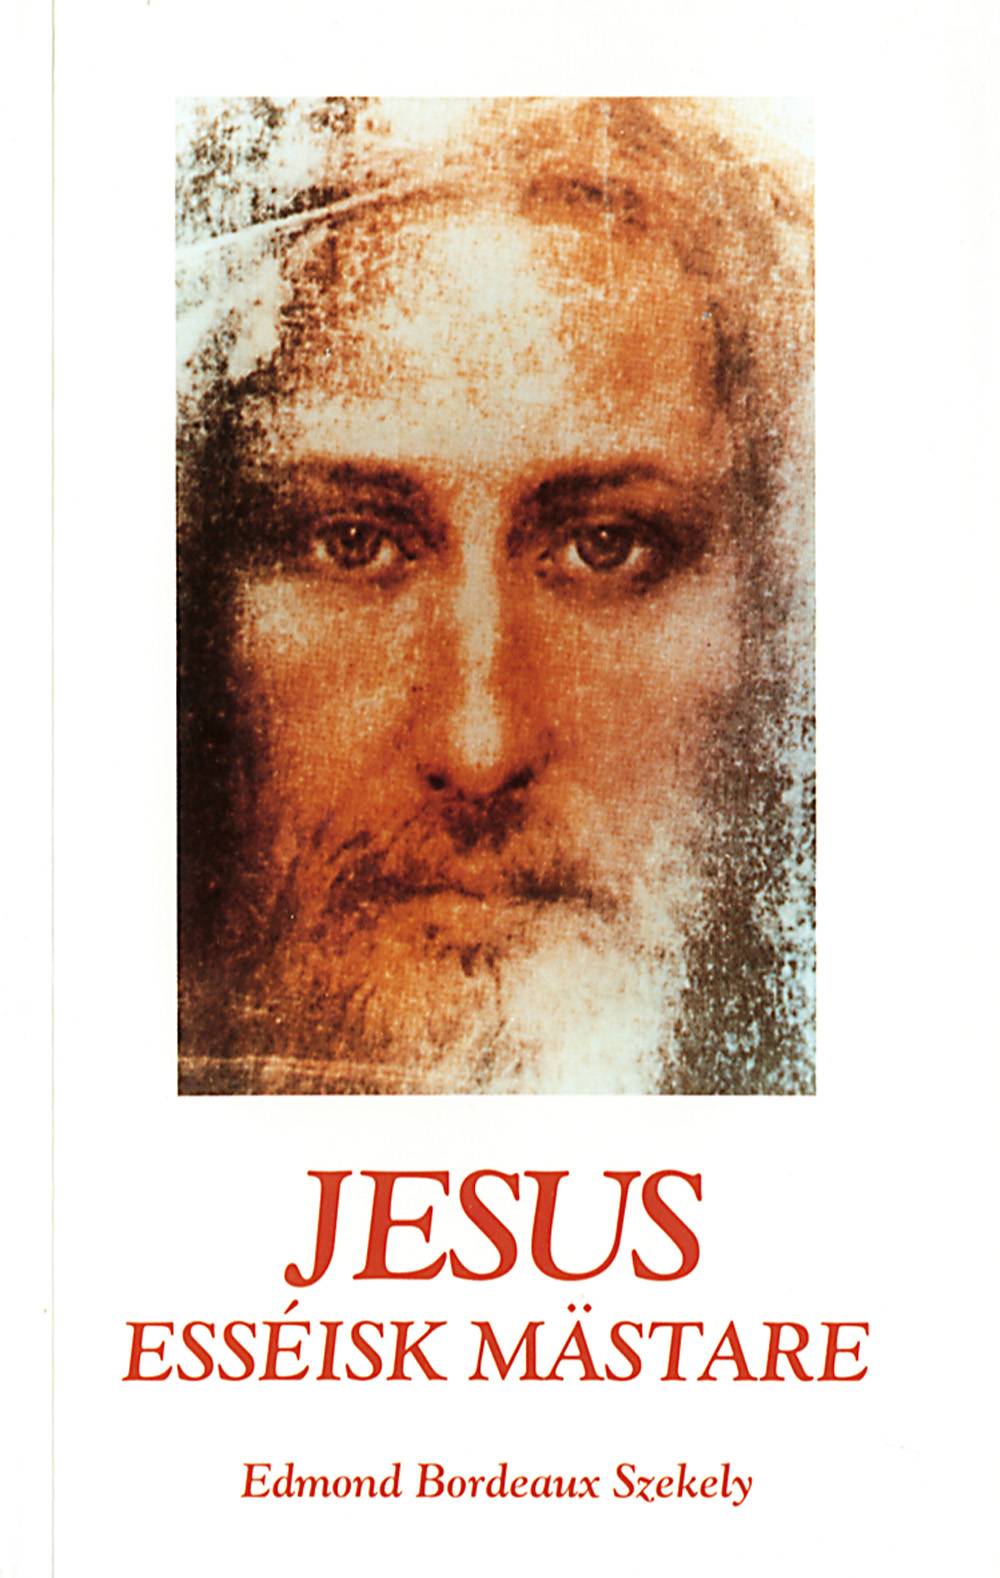 Jesus – esséisk mästare : en omvärdering med anledning av dö